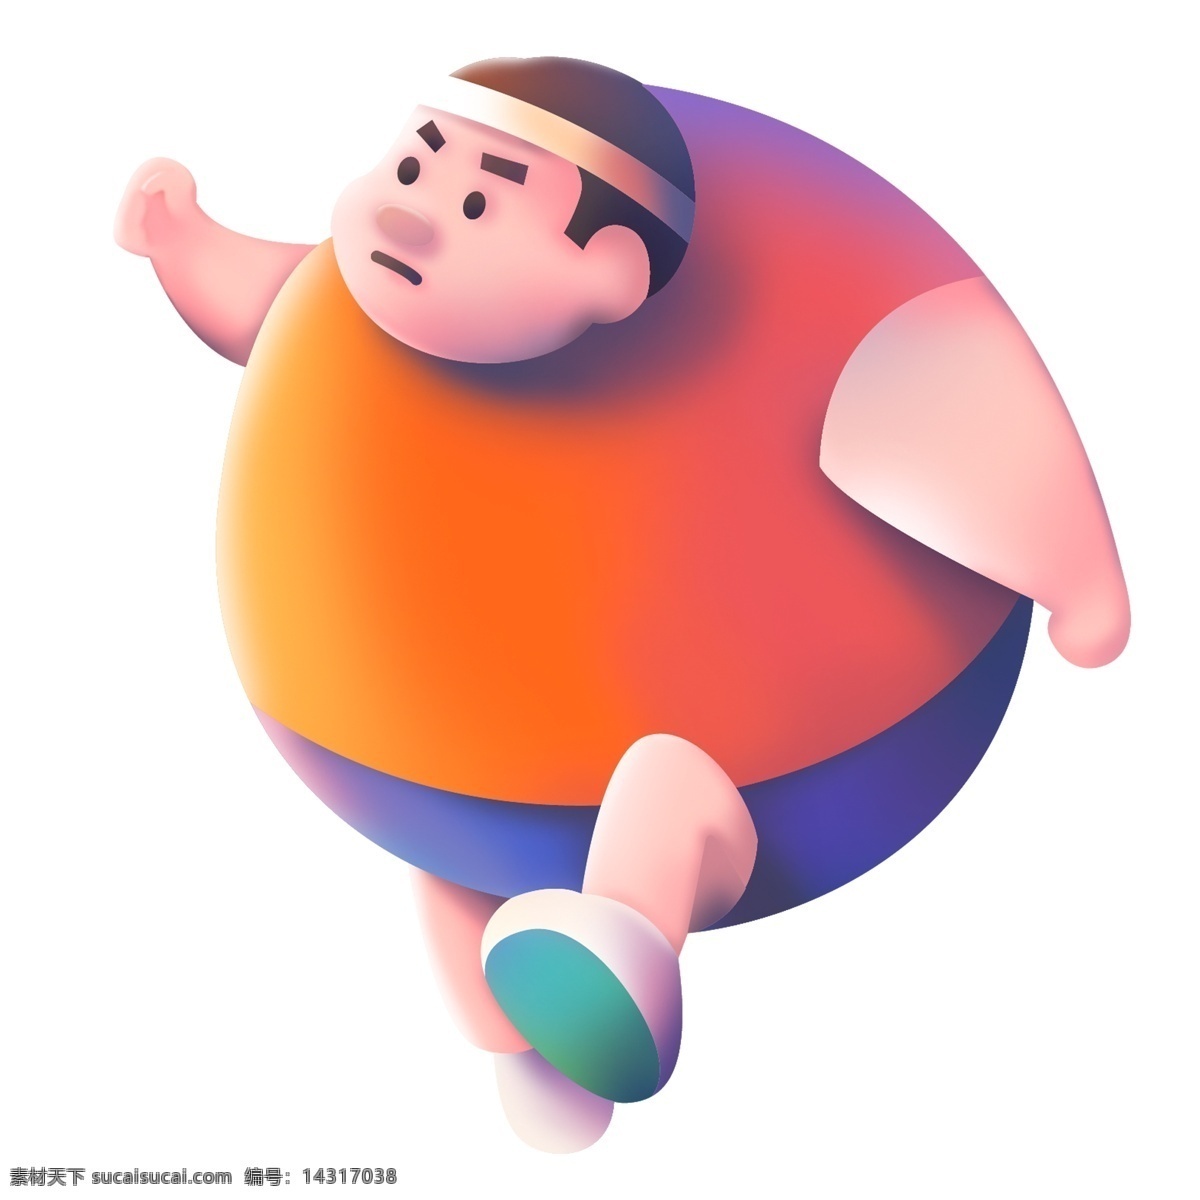 Hombre gordo ejercicio en el gimnasio 3 — Foto de Stock #51033101 ...